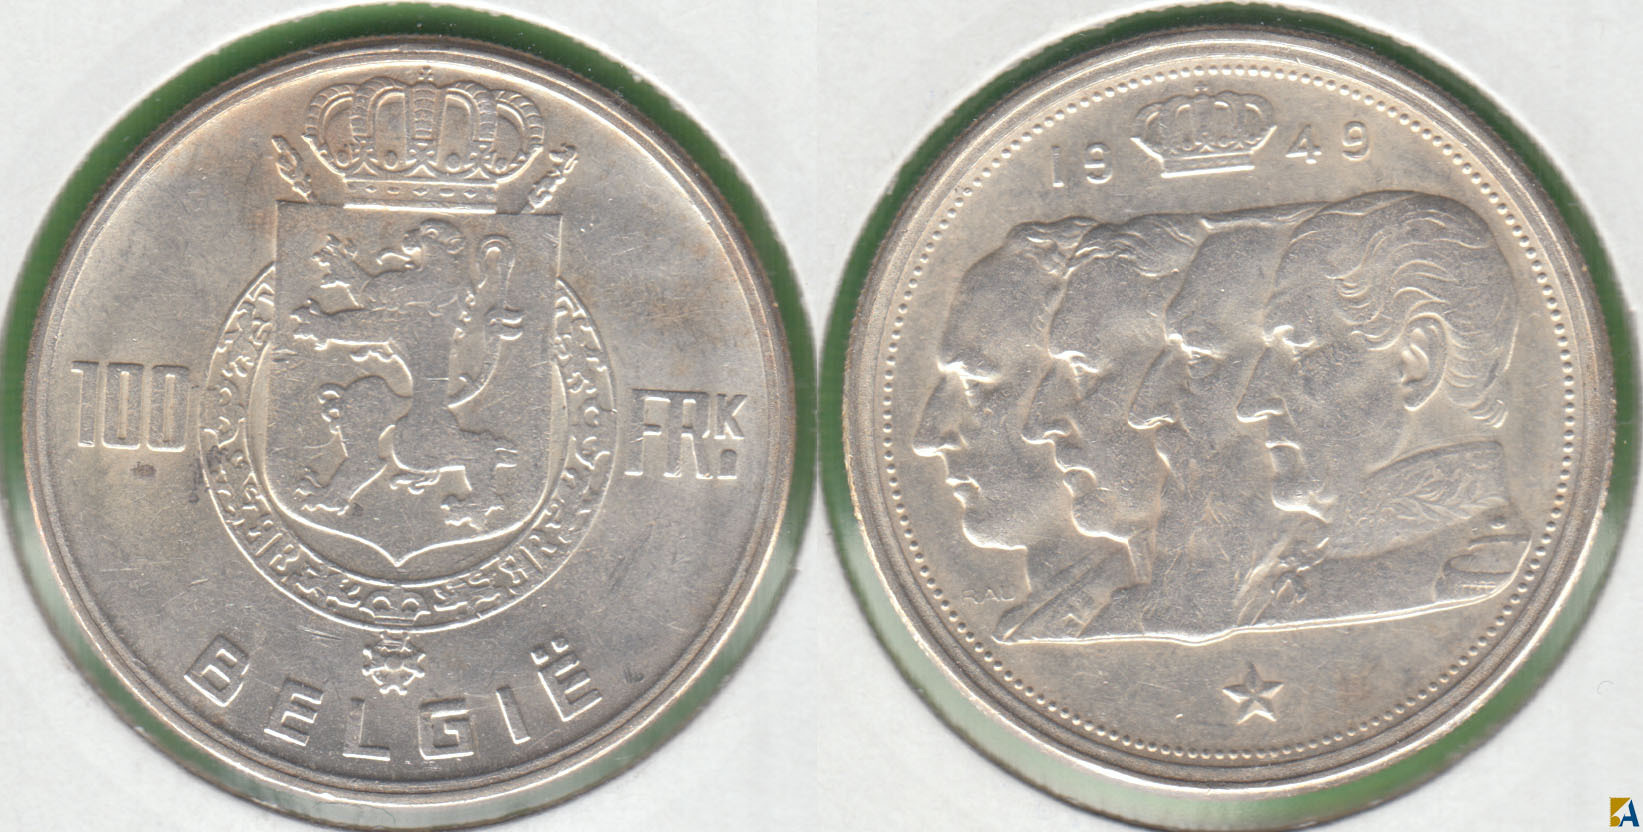 BELGICA - BELGIUM. 100 FRANCOS (FRANCS) DE 1949. PLATA 0.835.